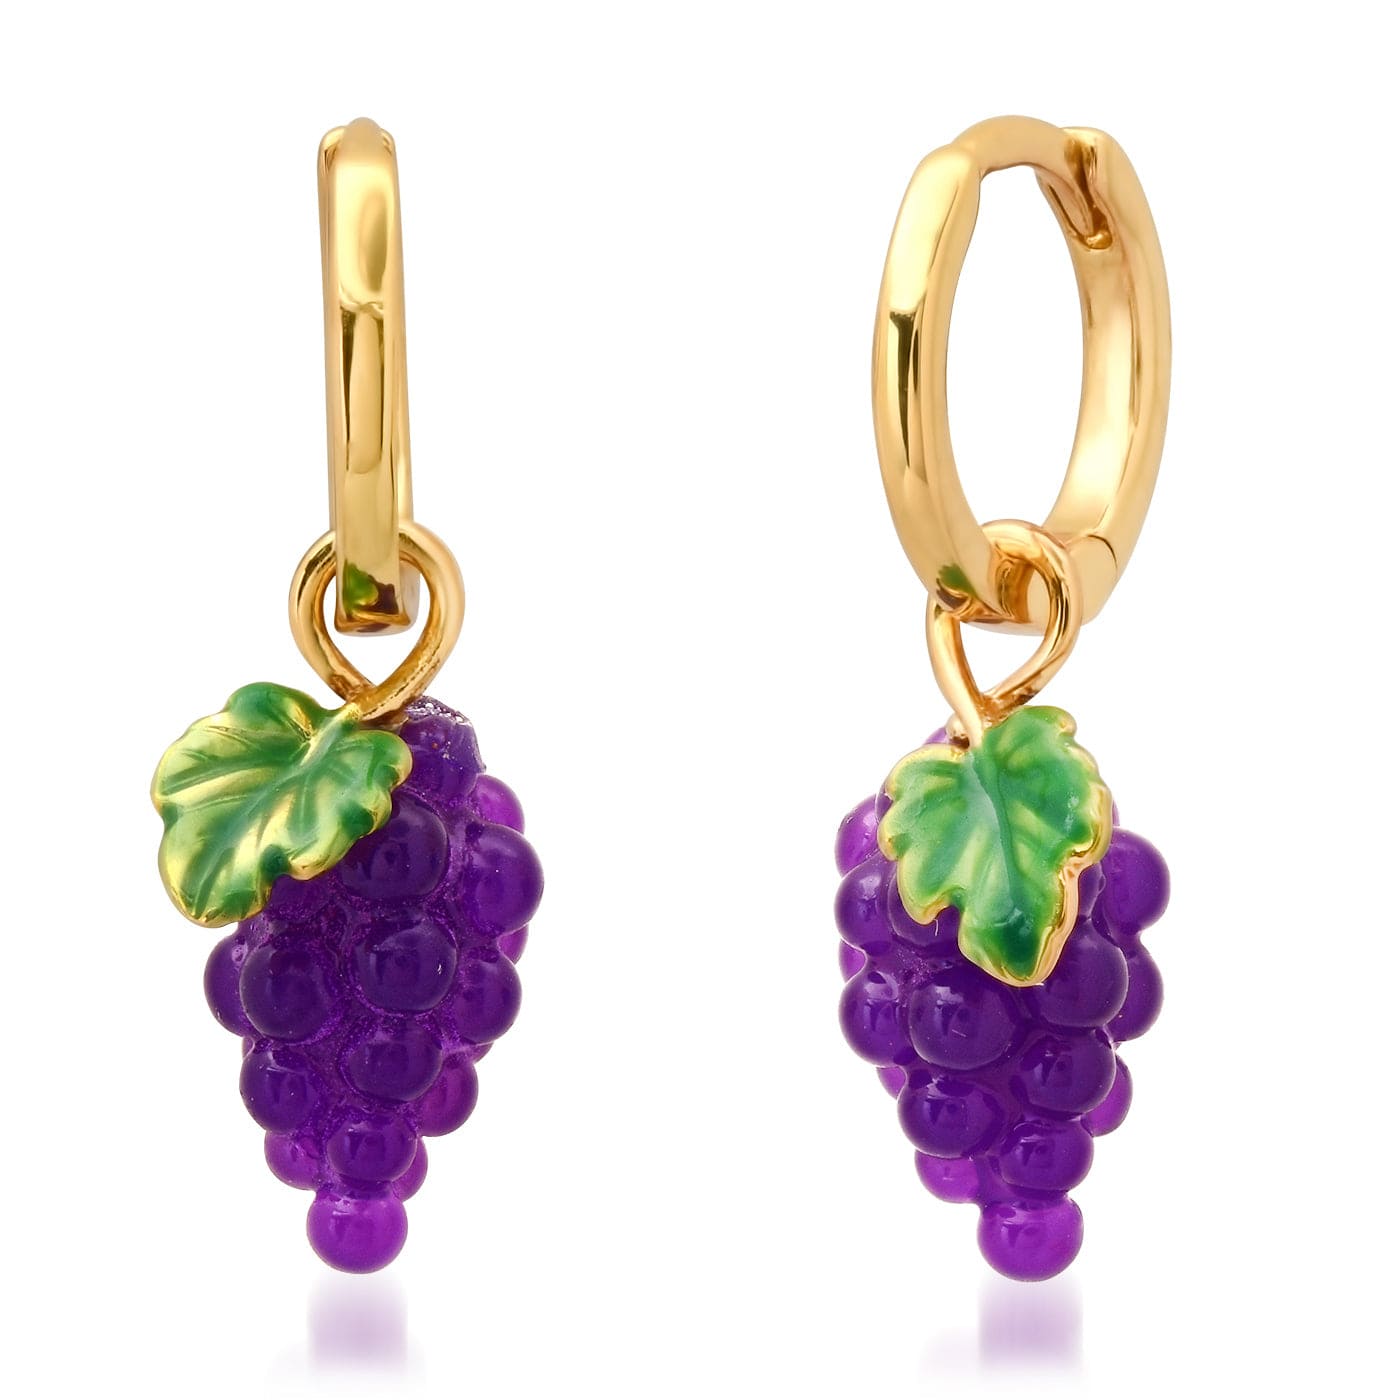 TAI JEWELRY Earrings Grape Cluster Huggie Earrings